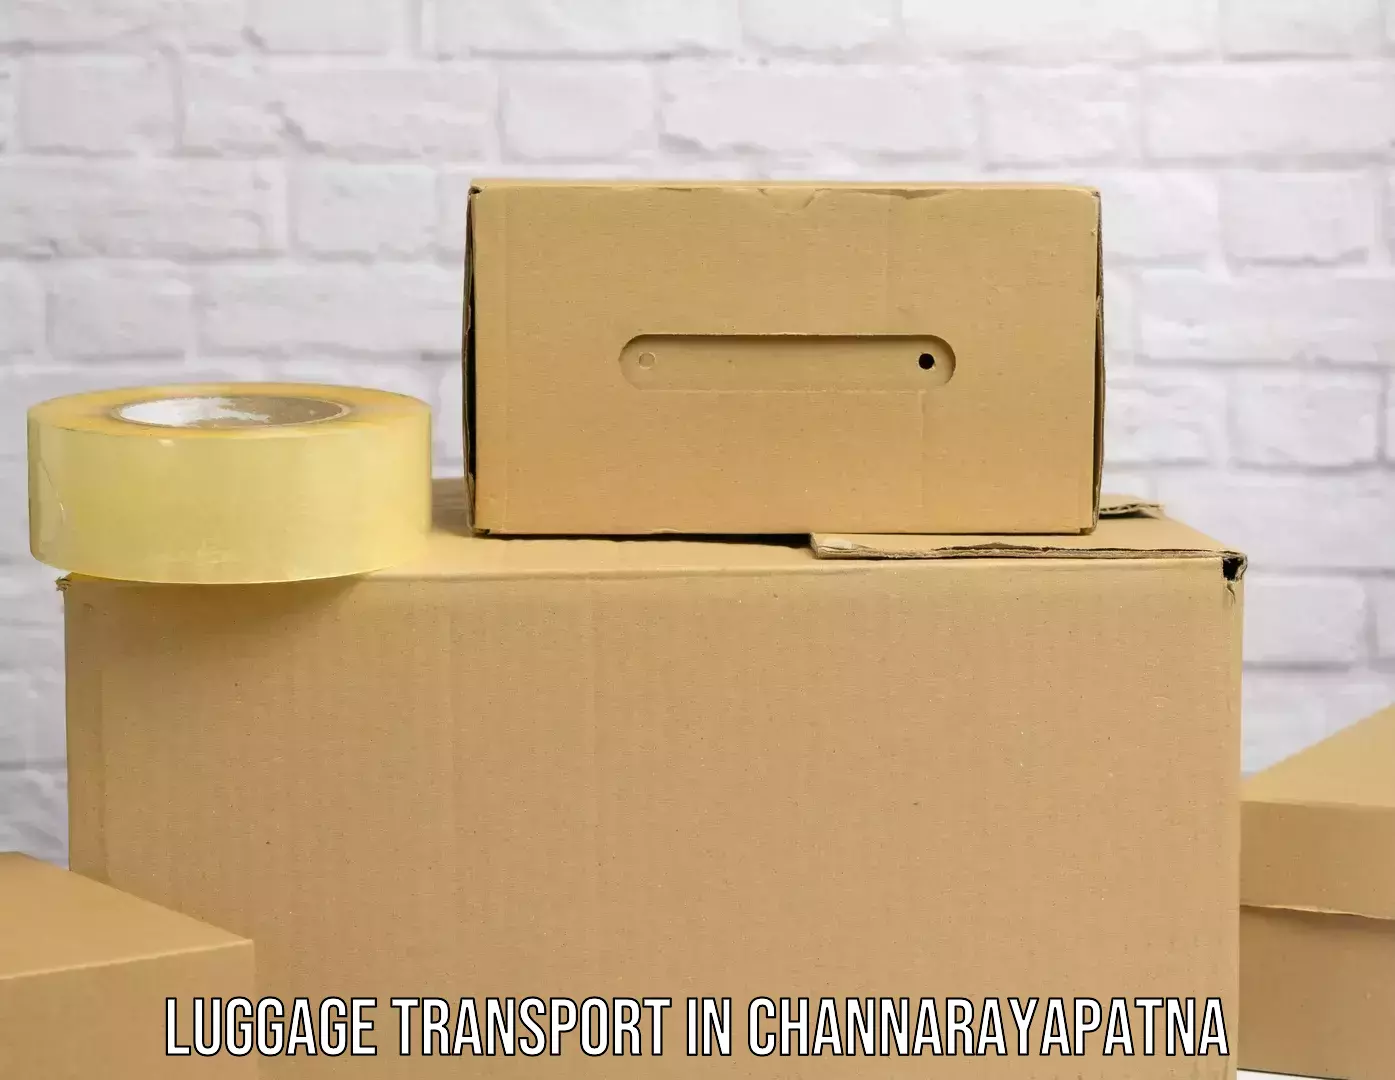 Regional luggage transport in Channarayapatna